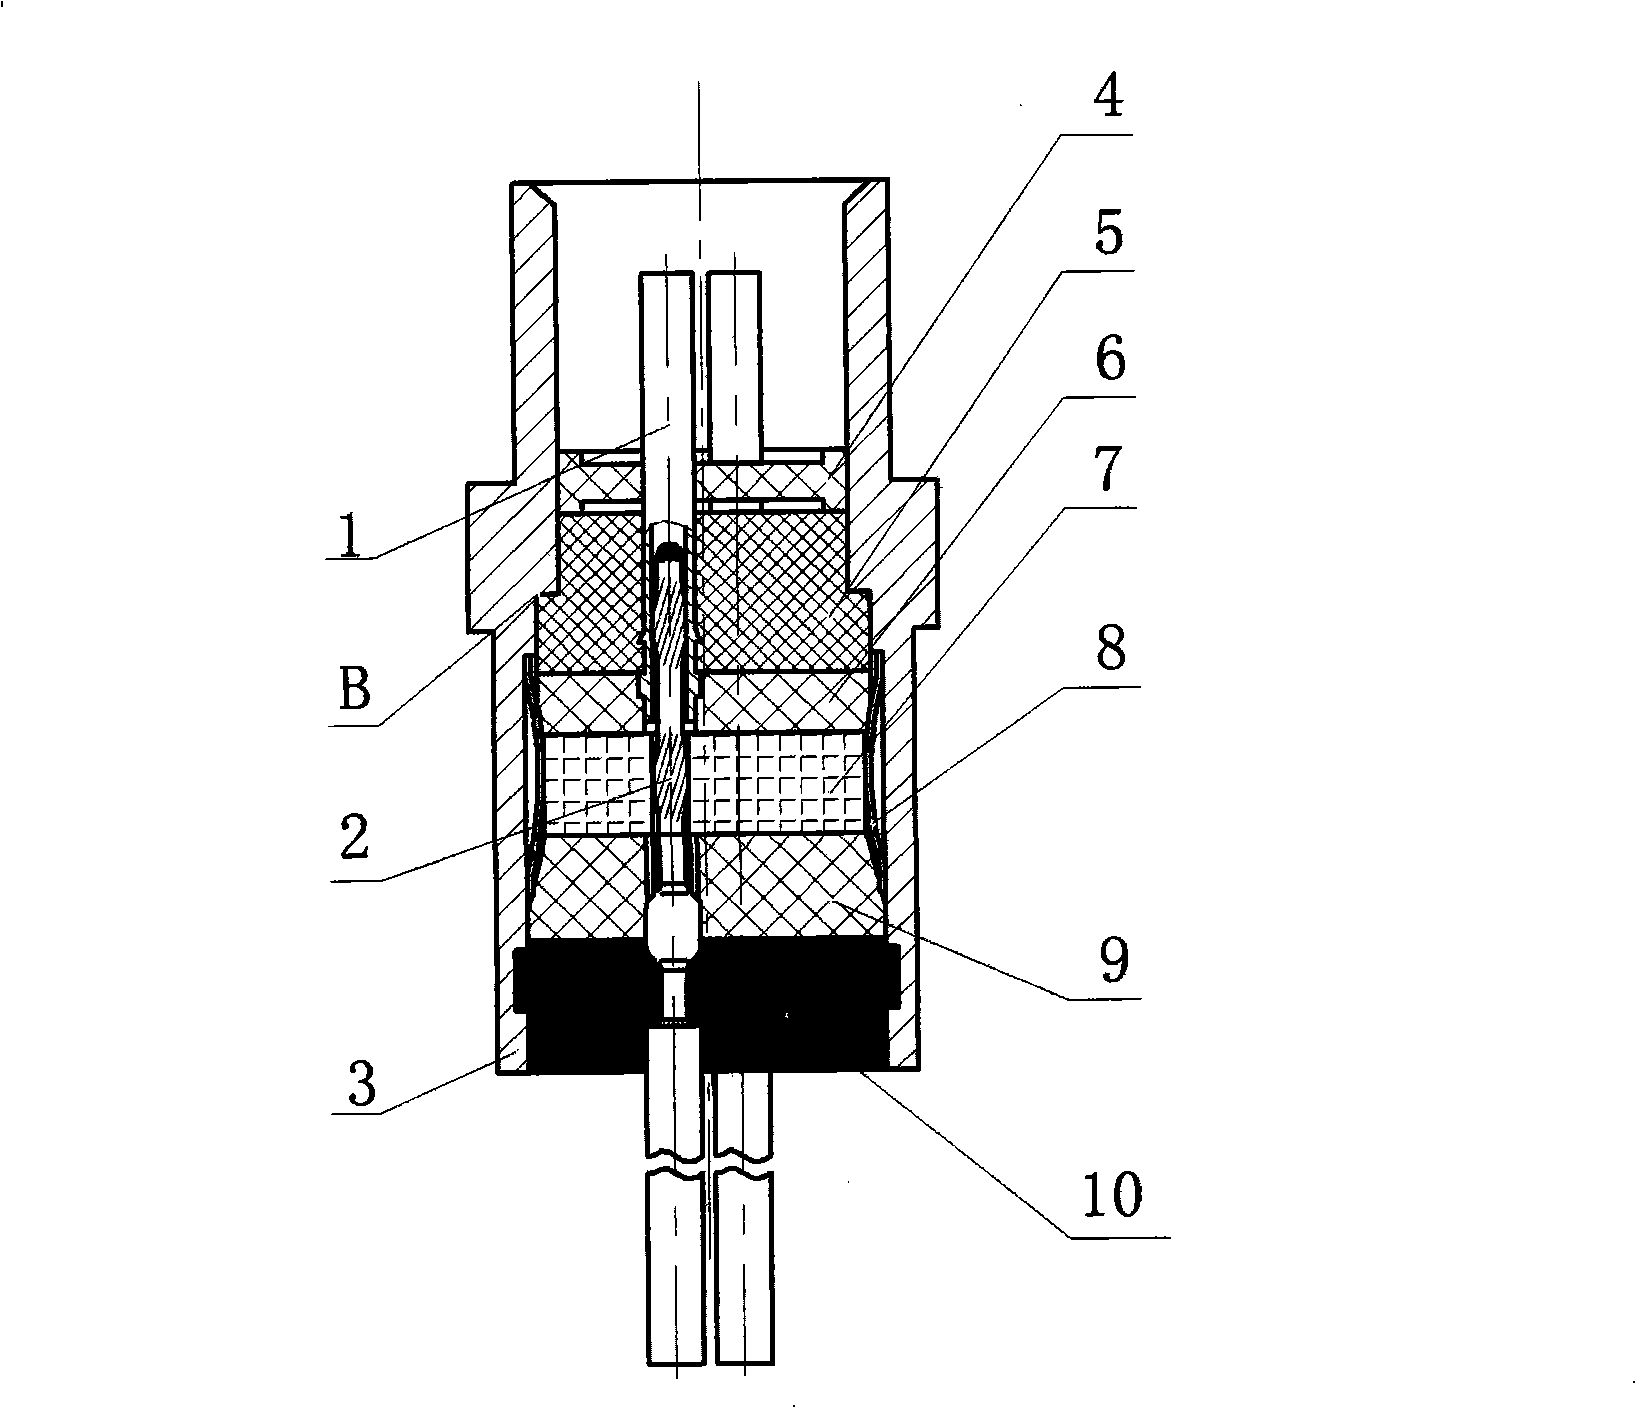 Planar array filtering connector